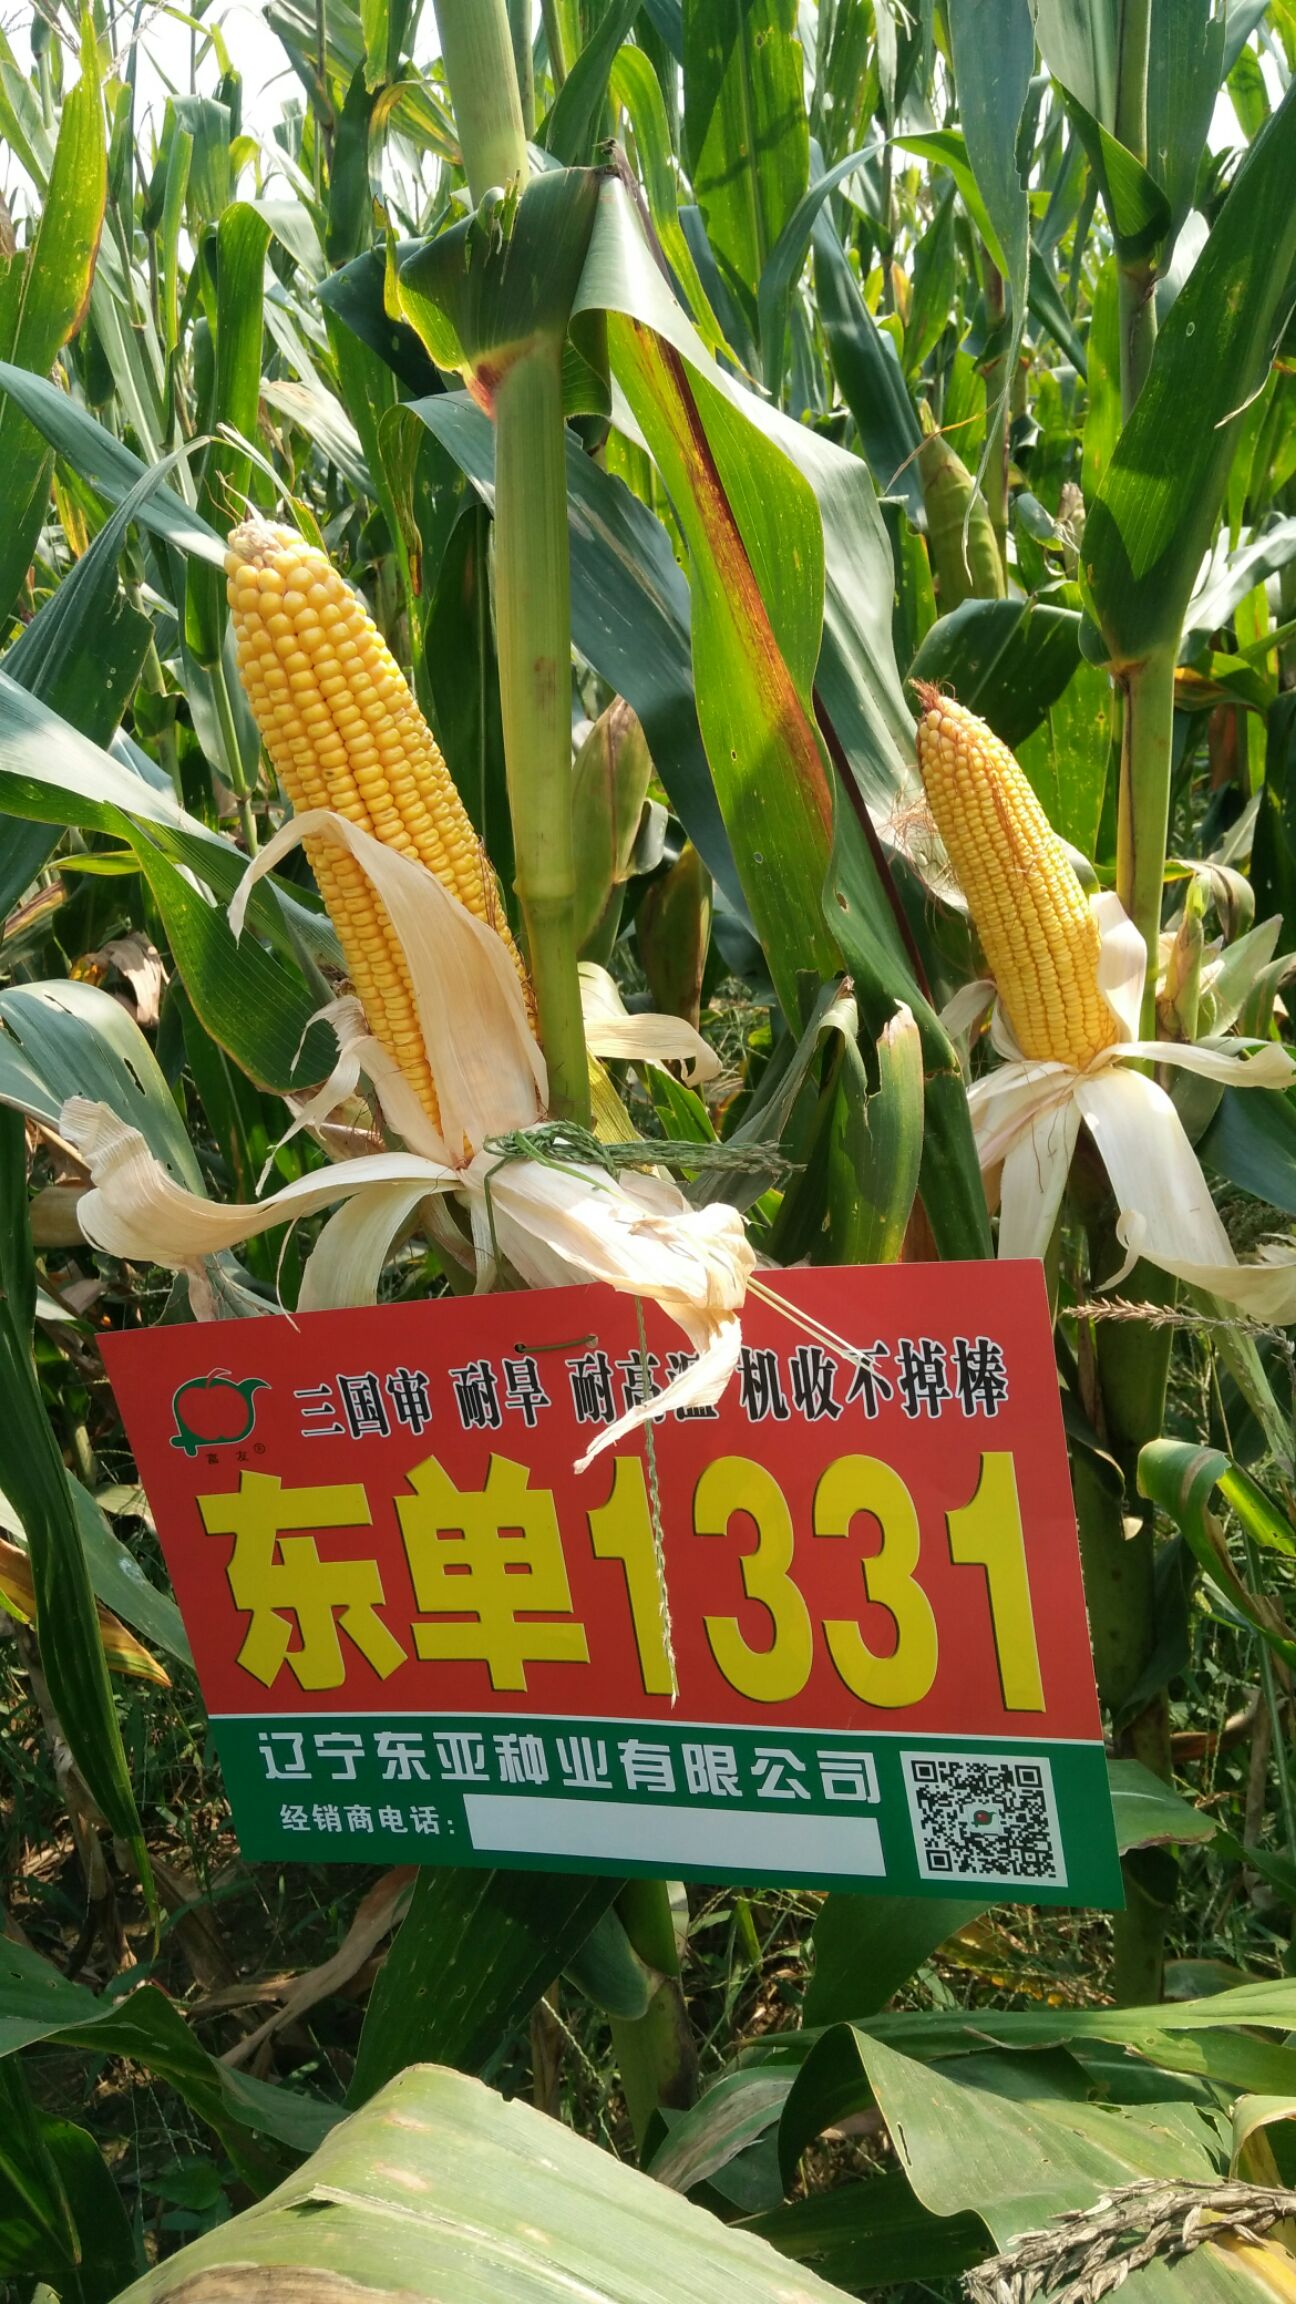 东单1331玉米种子 东单1331,抗倒抗虫,抗病抗旱,适合机收,双国审玉米